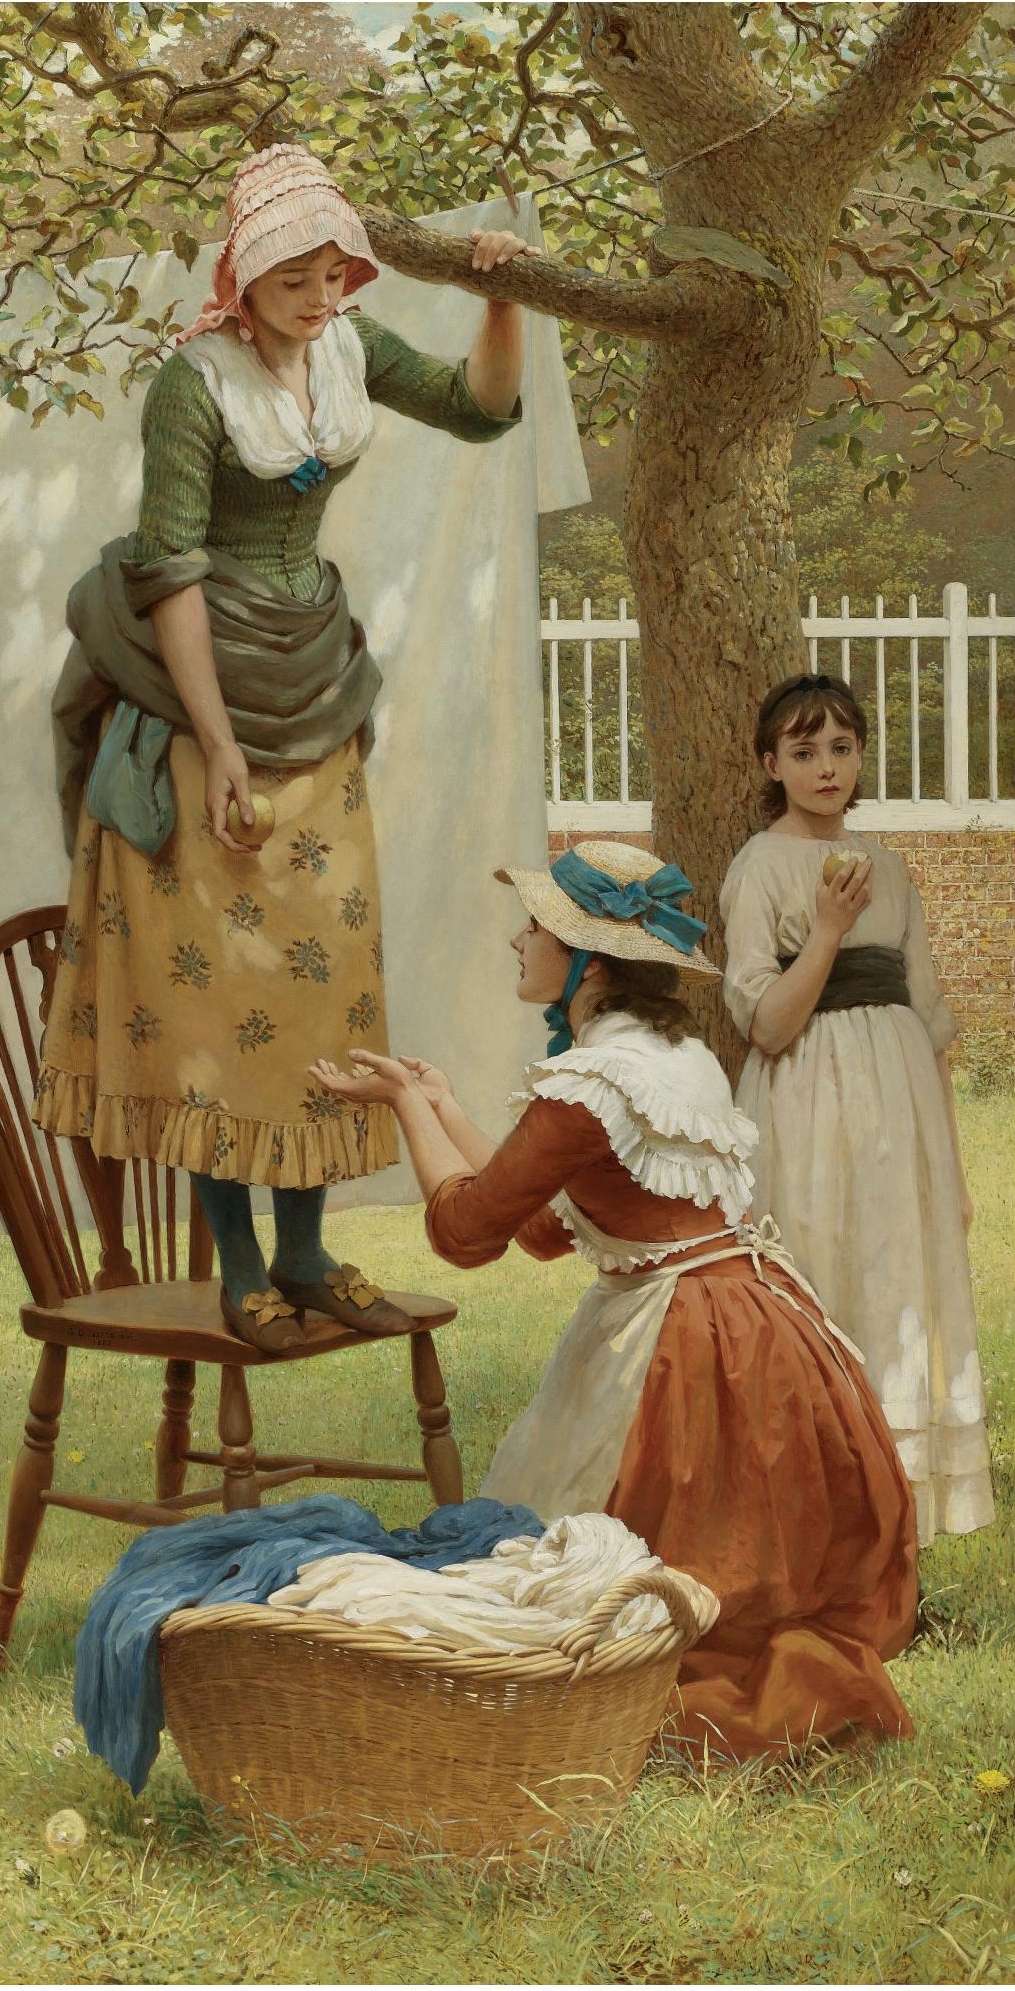 The daughters of eve. Джордж Данлоп Лесли. Английский художник George Dunlop Leslie(1835-1921). Джордж Данлоп Лесли (George Dunlop Leslie), 1835-1921. Англия. Джордж Данлоп Лесли картины.